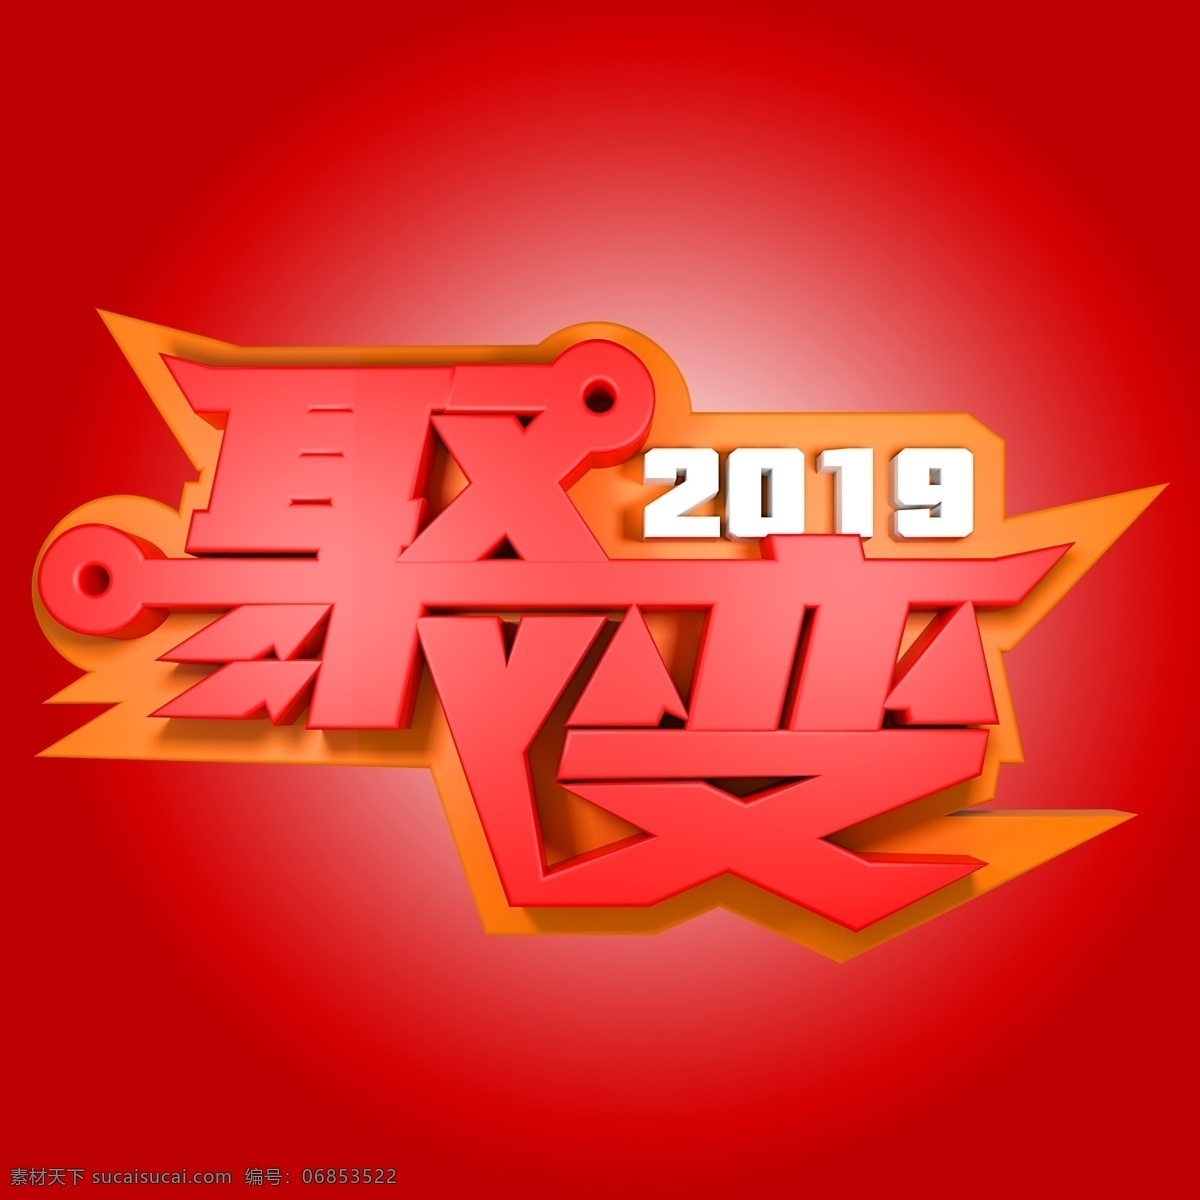 2019 聚变 年会 活动 年会活动